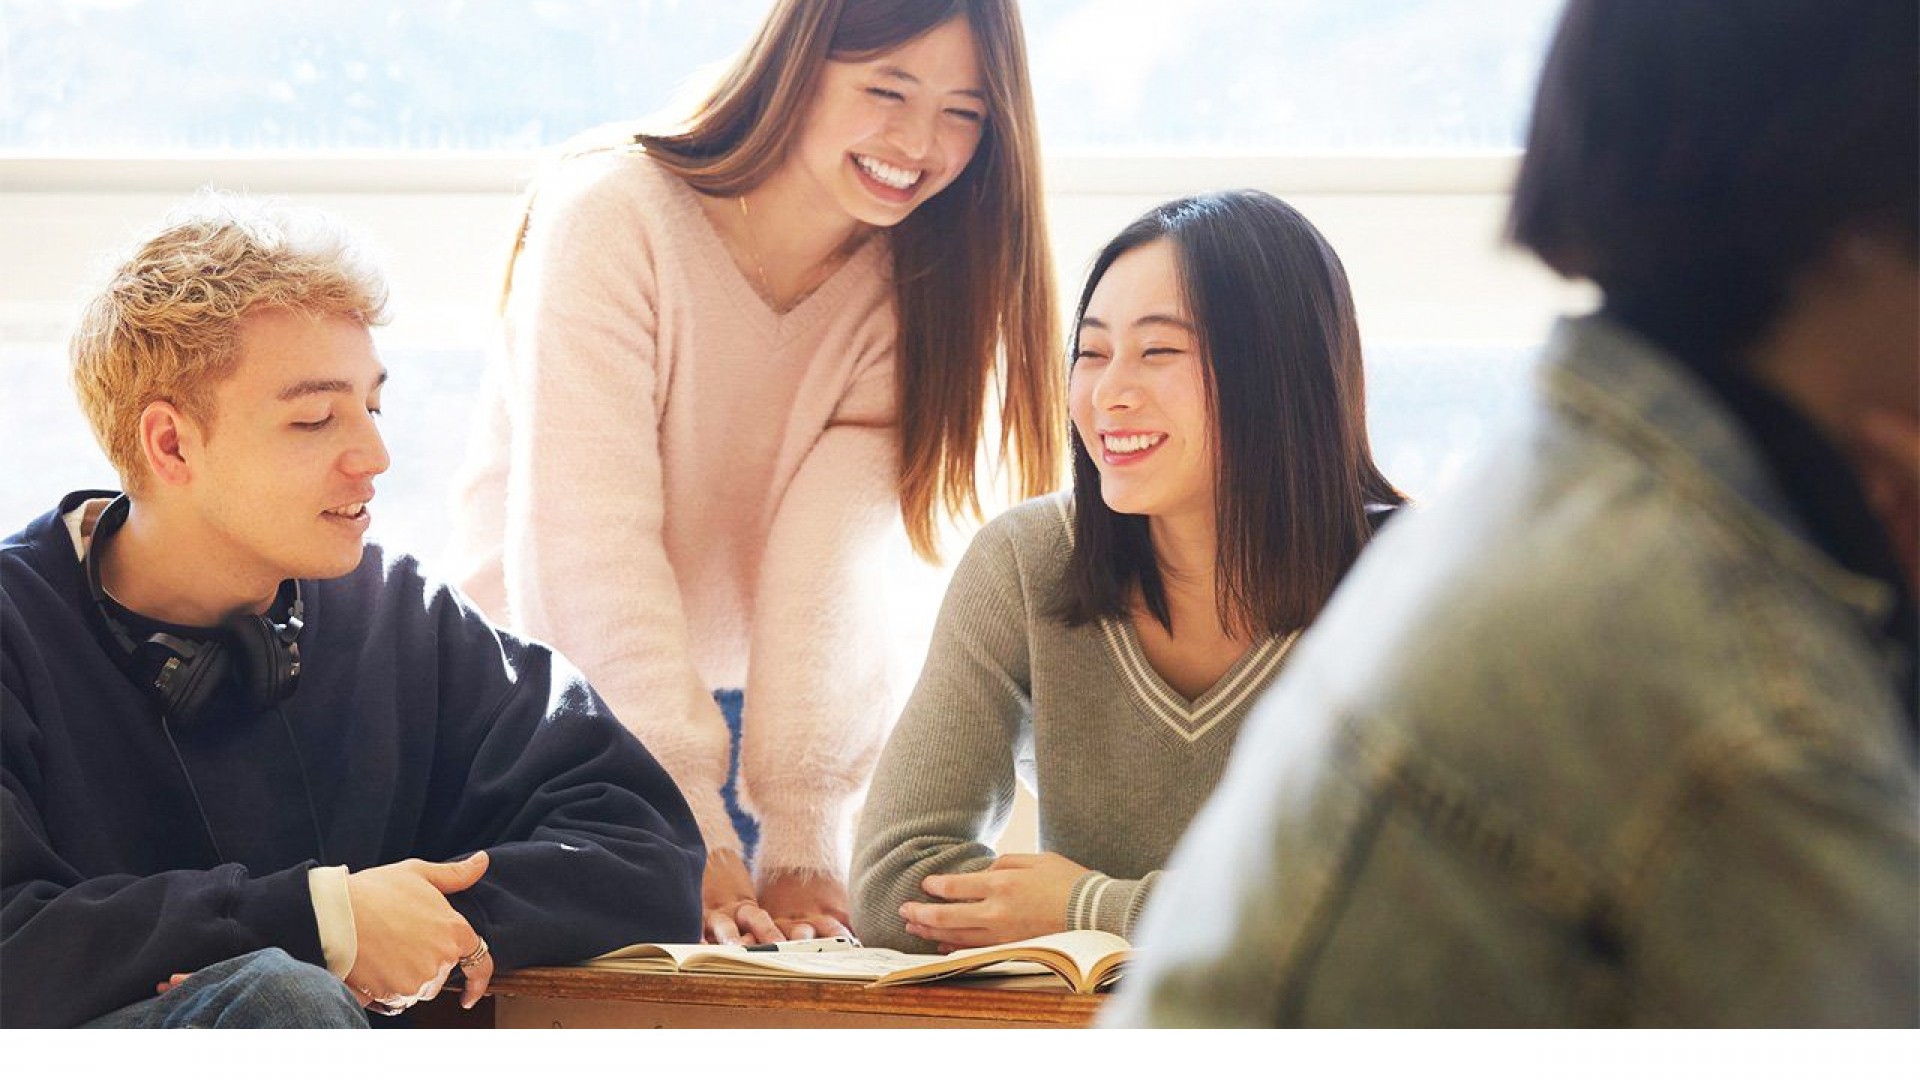 Học giao tiếp tiếng Nhật: Những tuyệt chiêu giúp bạn xây dựng kỹ năng phát triển hội thoại